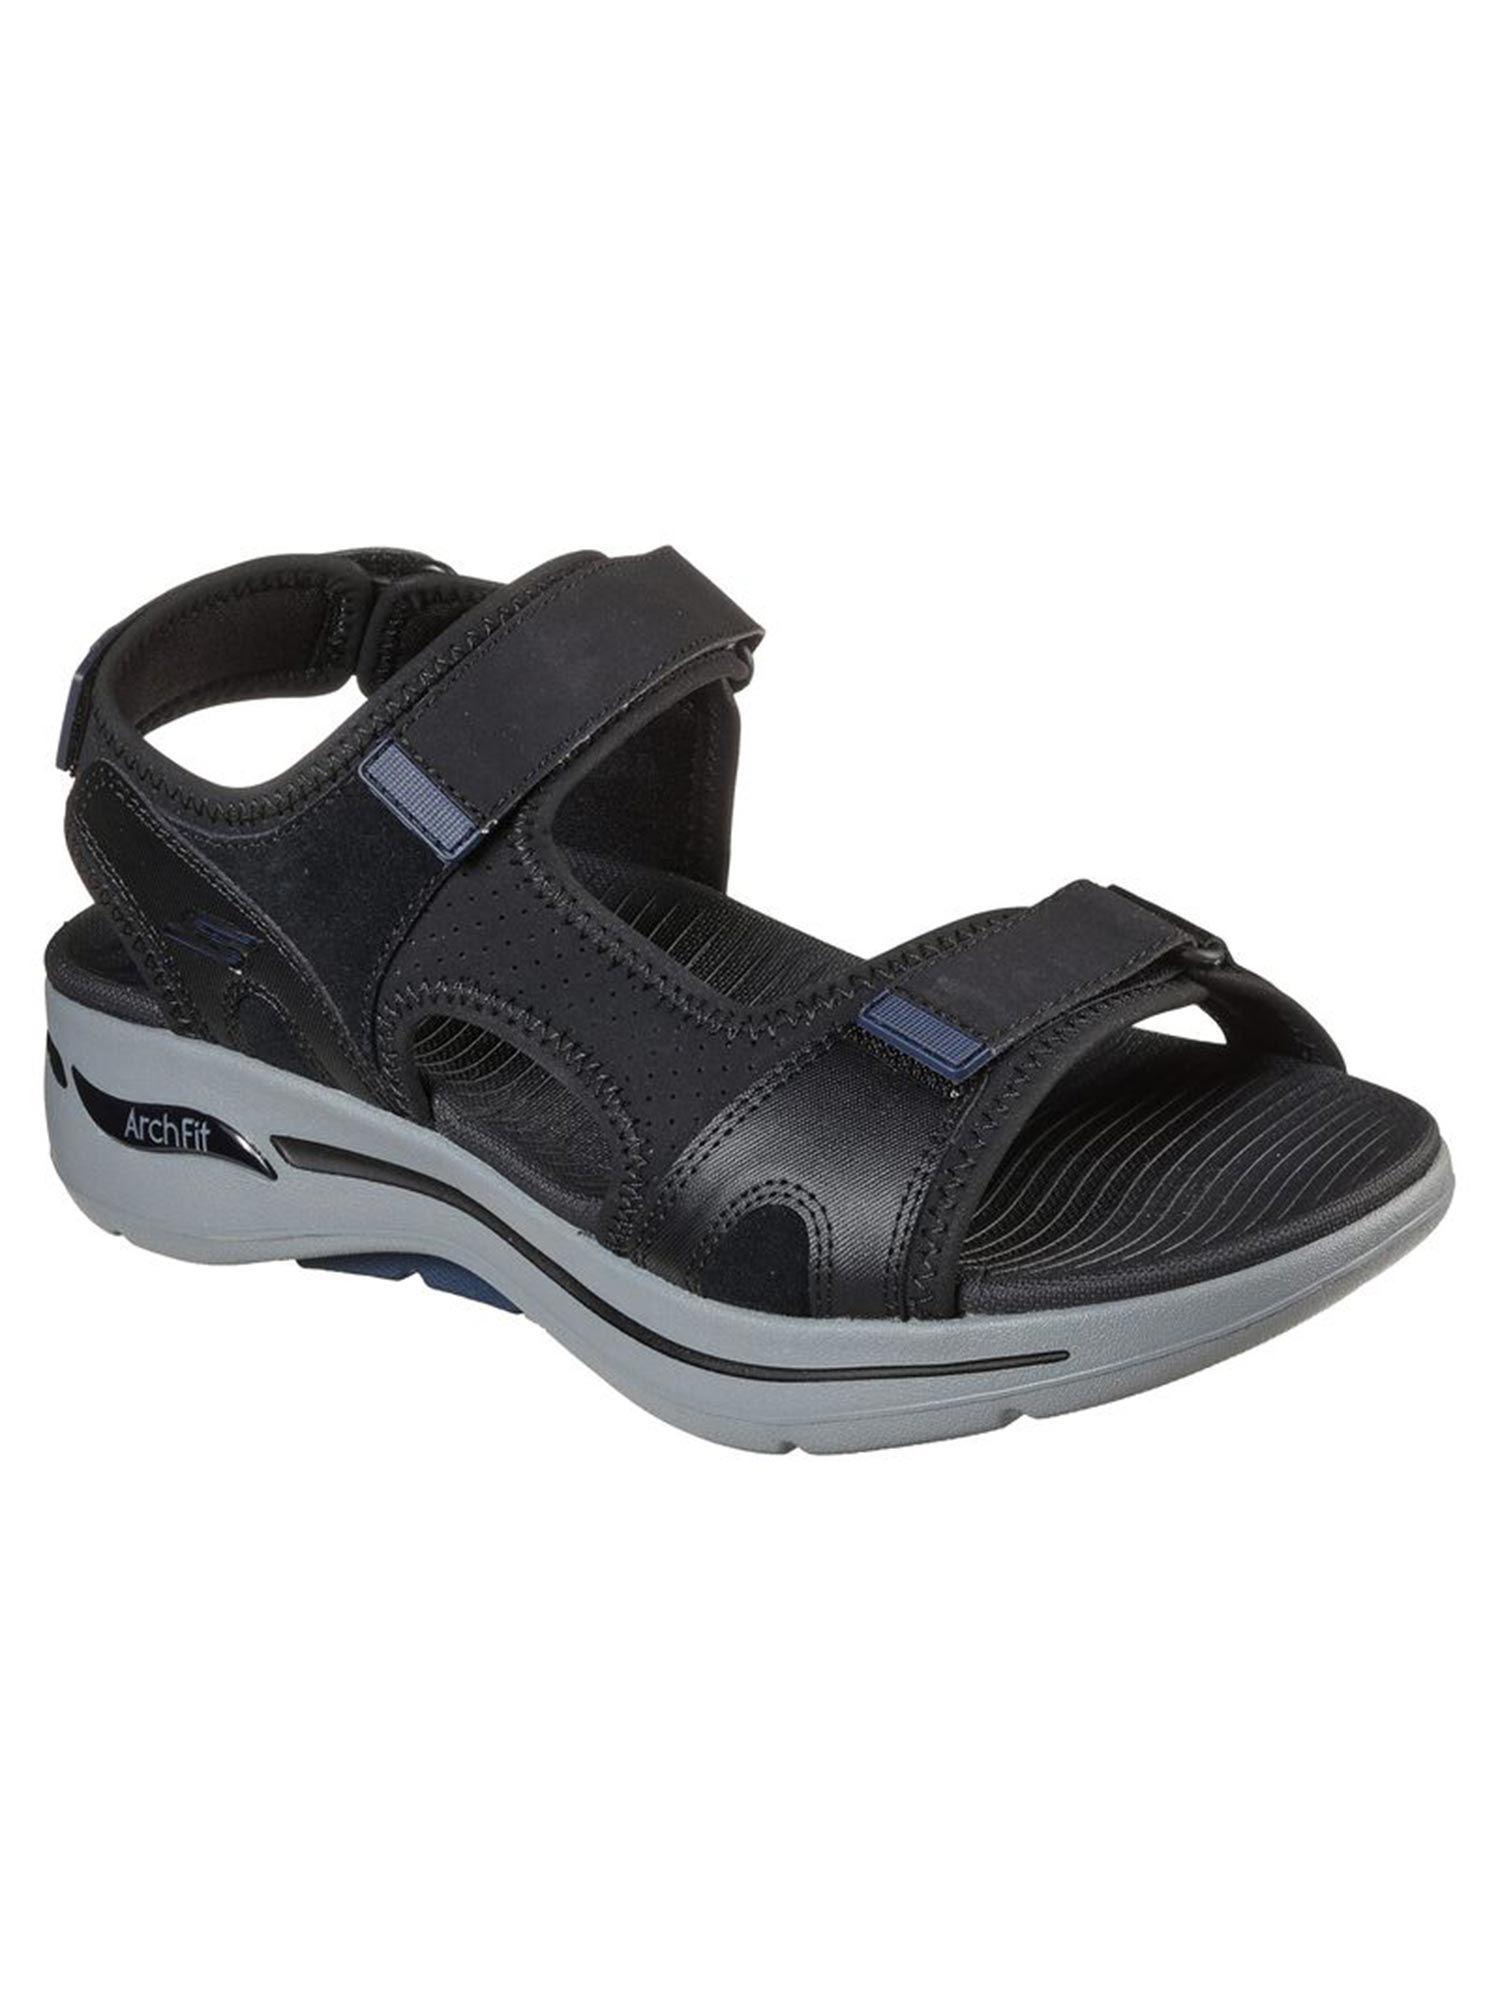 go-walk-arch-fit-sandal-missi-black-arch-fit-sandals